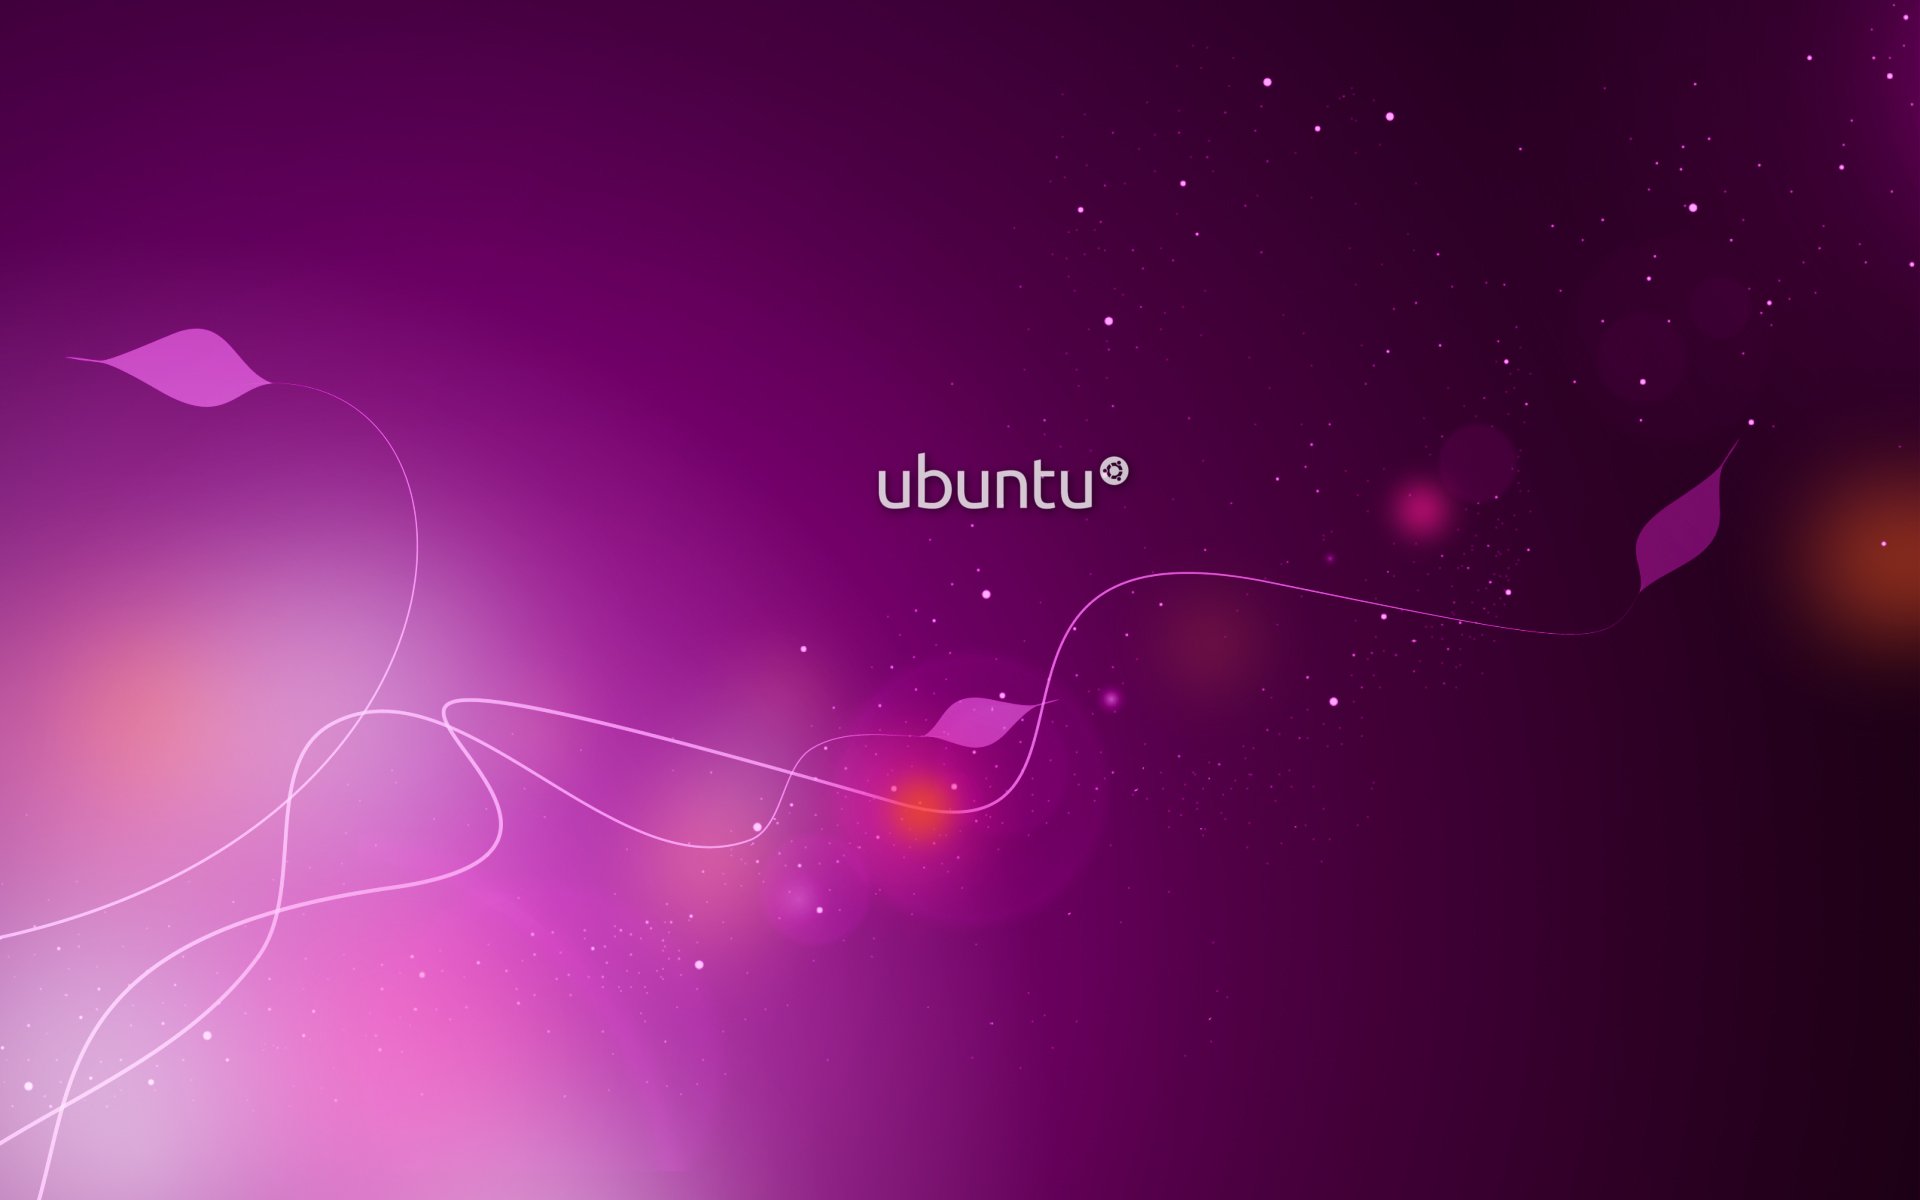 ubuntu wallpaper,violett,lila,rosa,himmel,licht